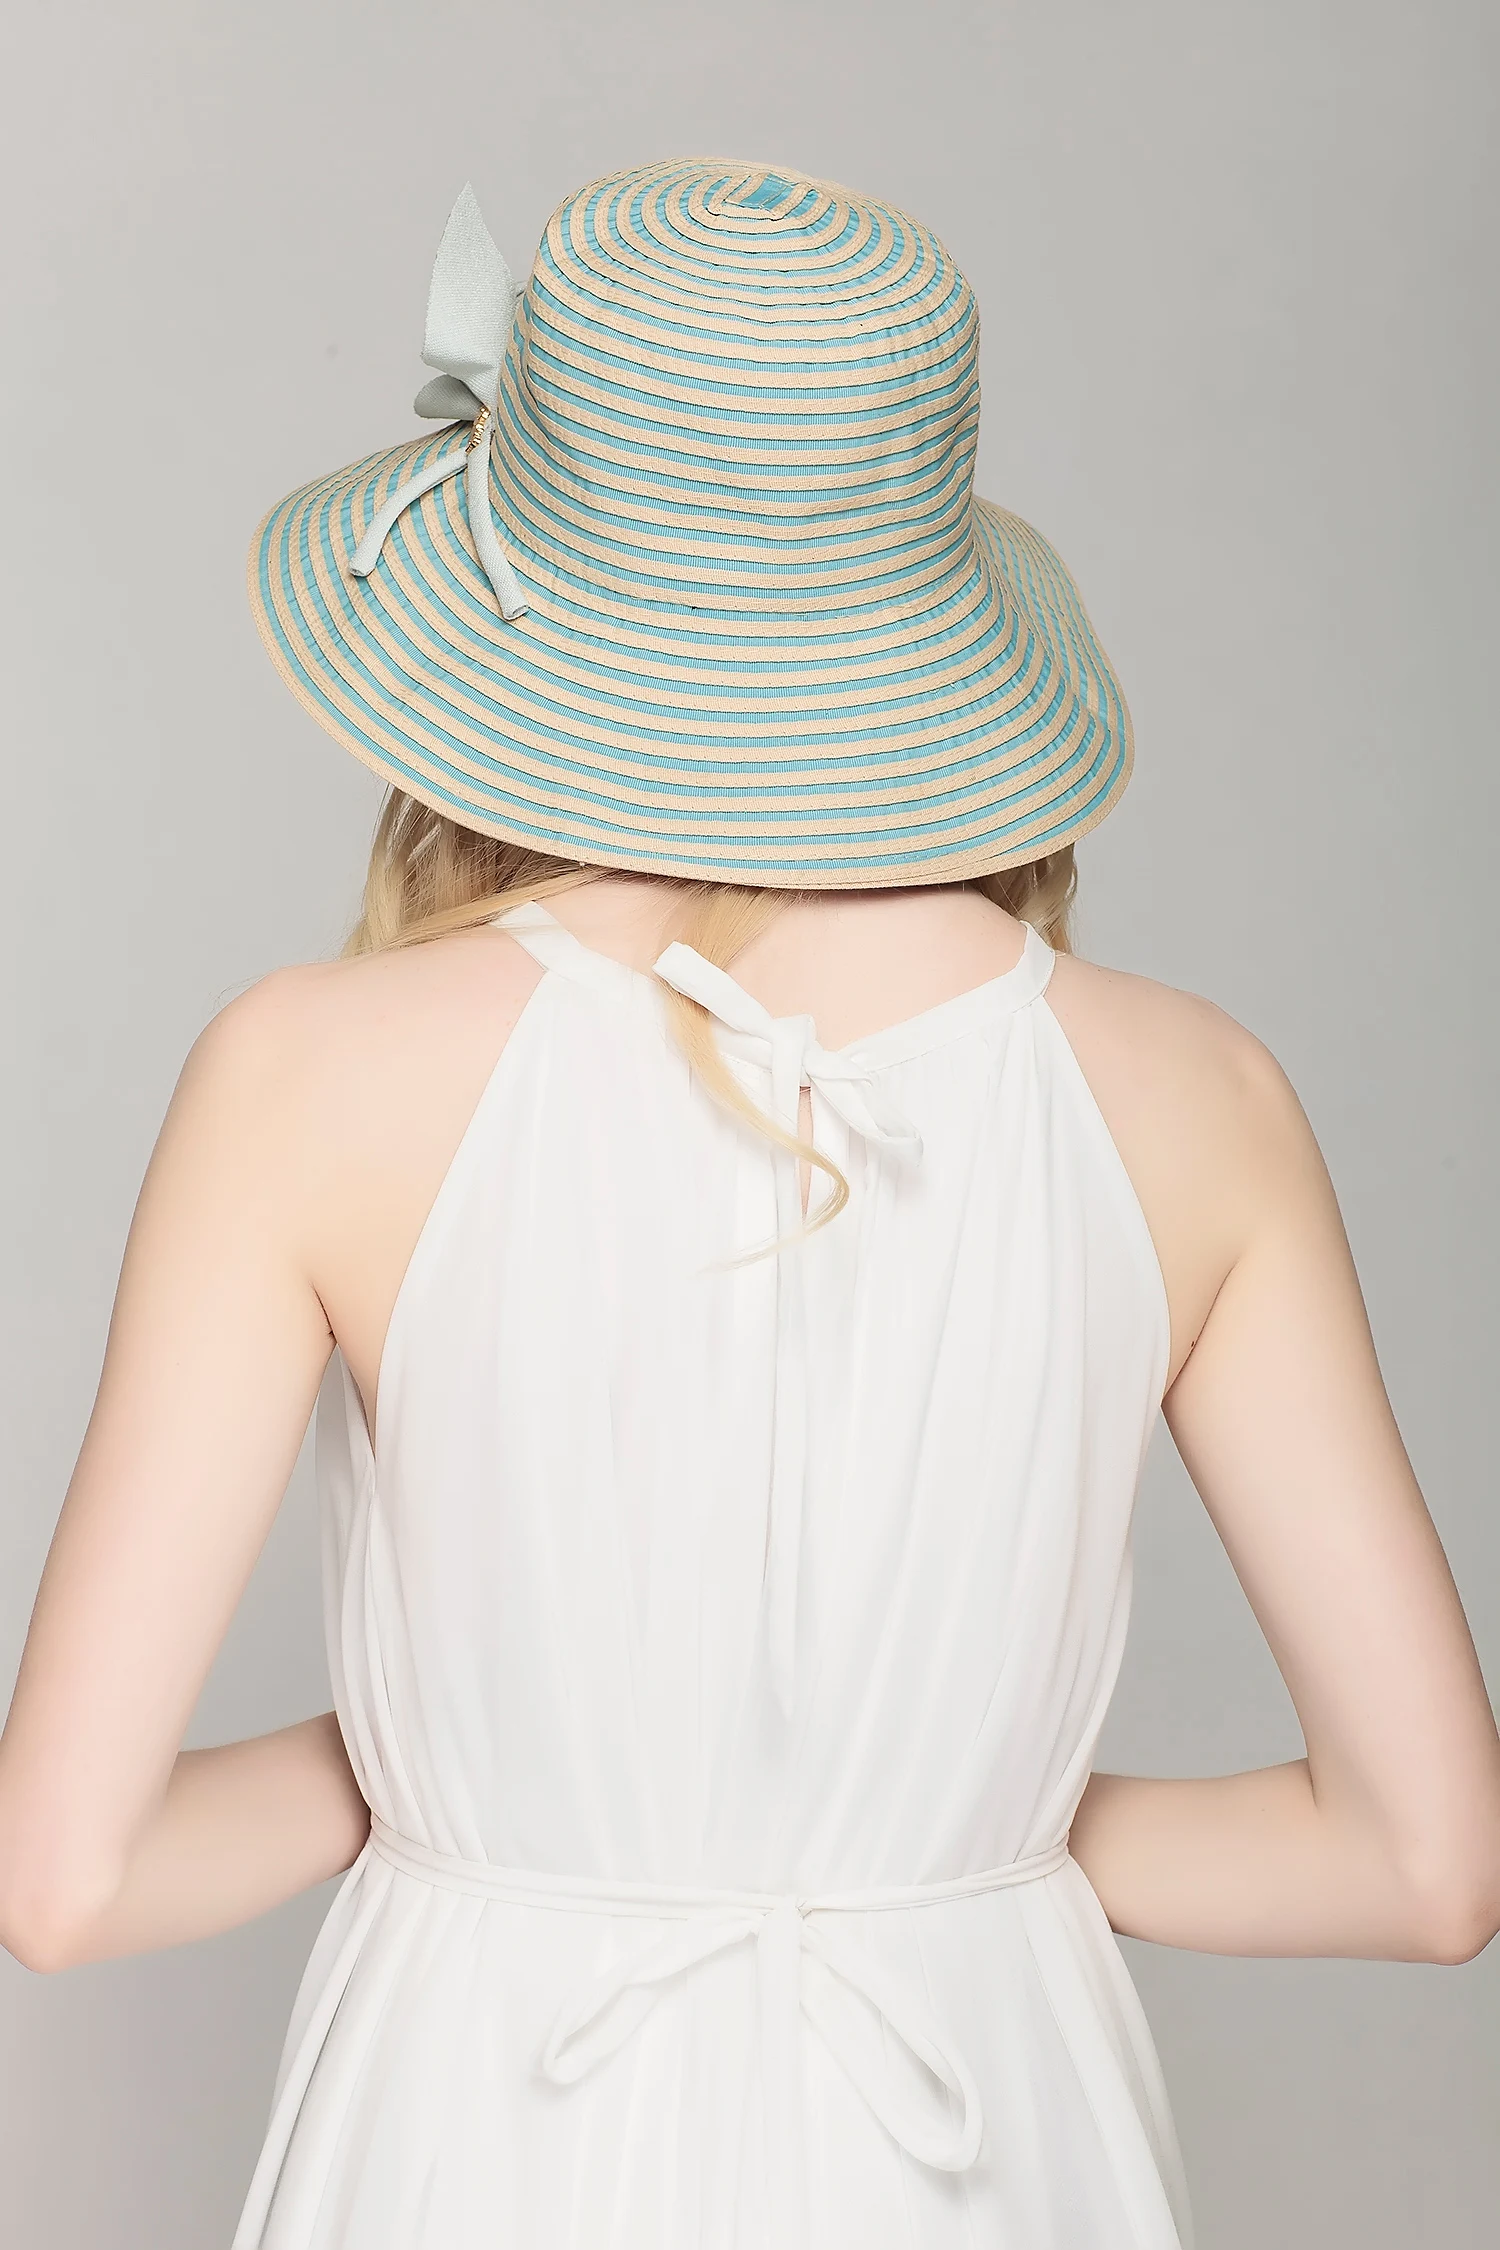 Модная стильная солнцезащитная Кепка, складывающаяся пляжная УФ-защита, 4 цвета, пляжные солнцезащитные шапки